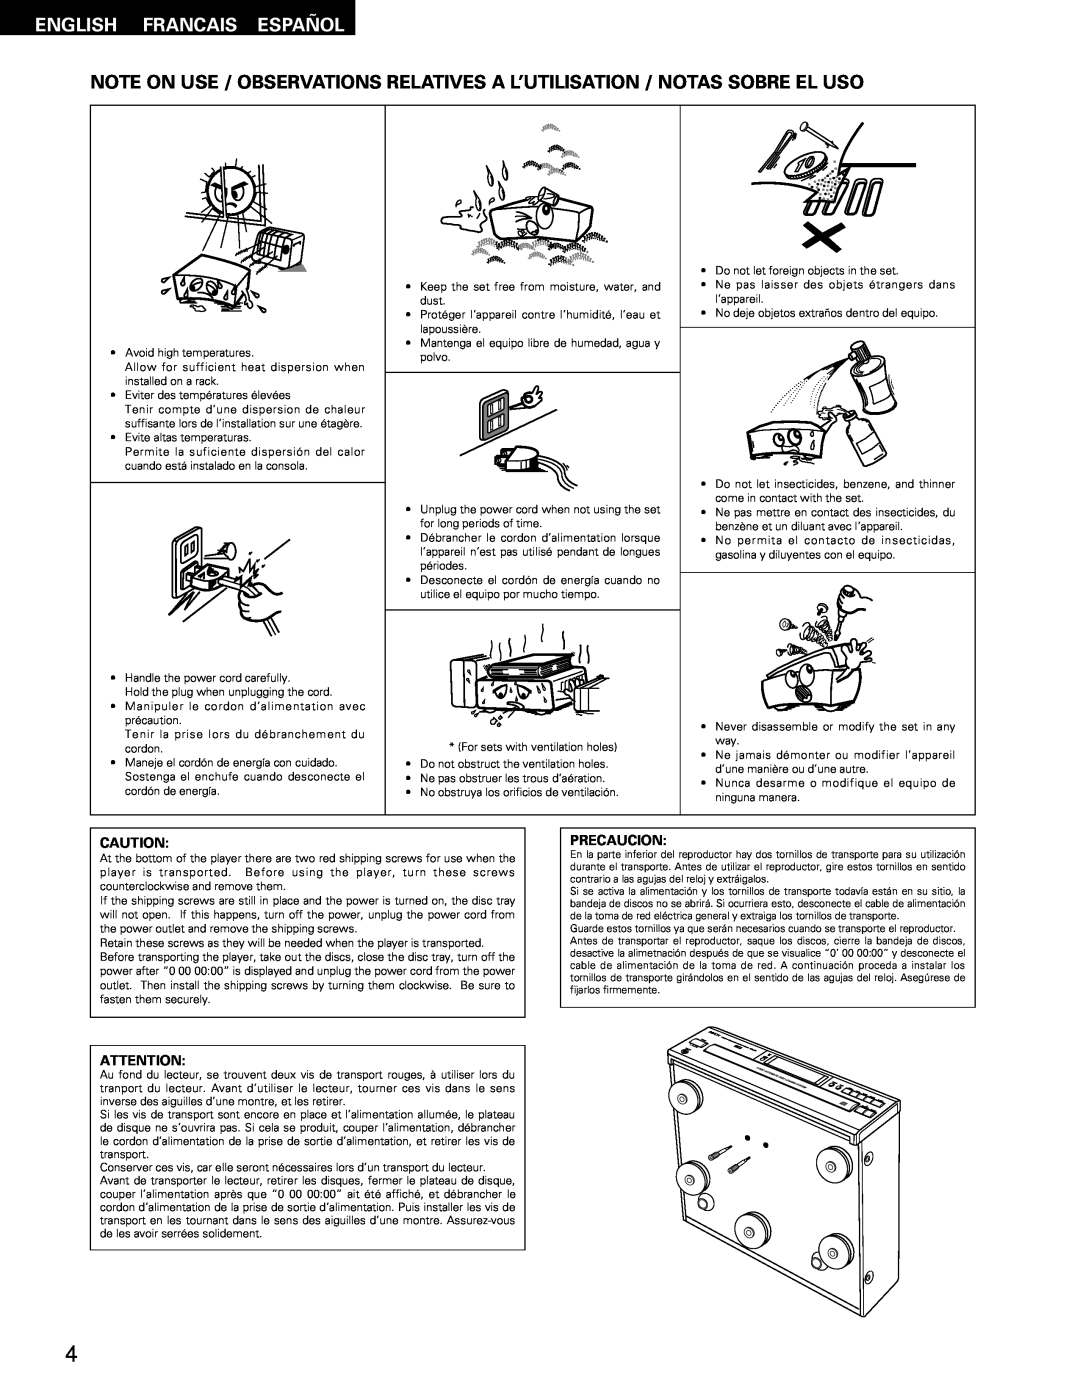 Denon DCM-65/35 manual English Francais Español, Precaucion 